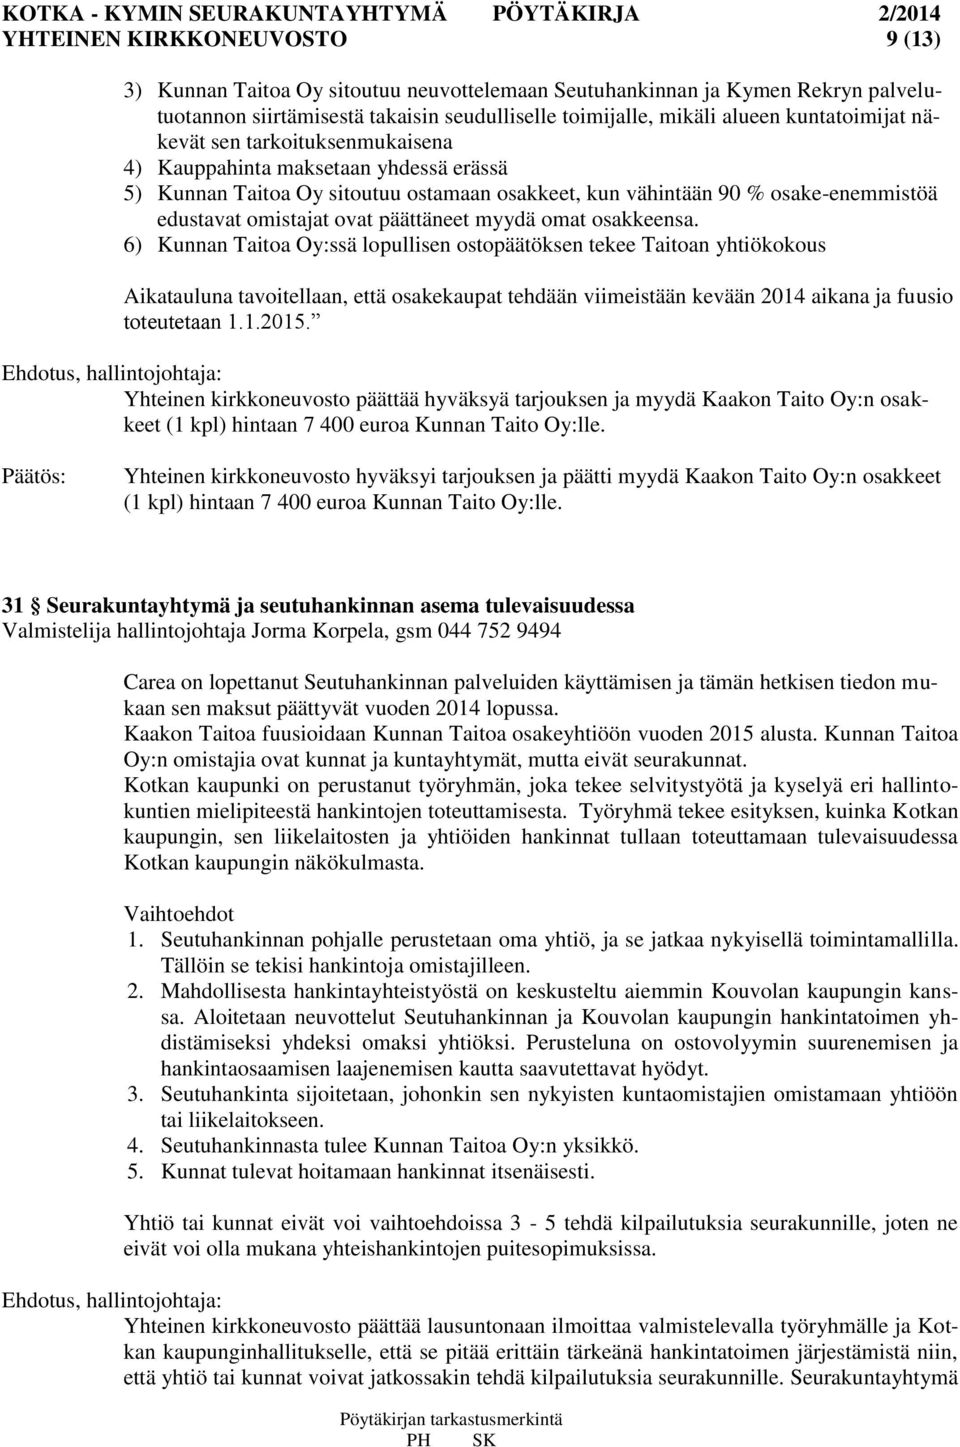 omat osakkeensa. 6) Kunnan Taitoa Oy:ssä lopullisen ostopäätöksen tekee Taitoan yhtiökokous Aikatauluna tavoitellaan, että osakekaupat tehdään viimeistään kevään 2014 aikana ja fuusio toteutetaan 1.1.2015.